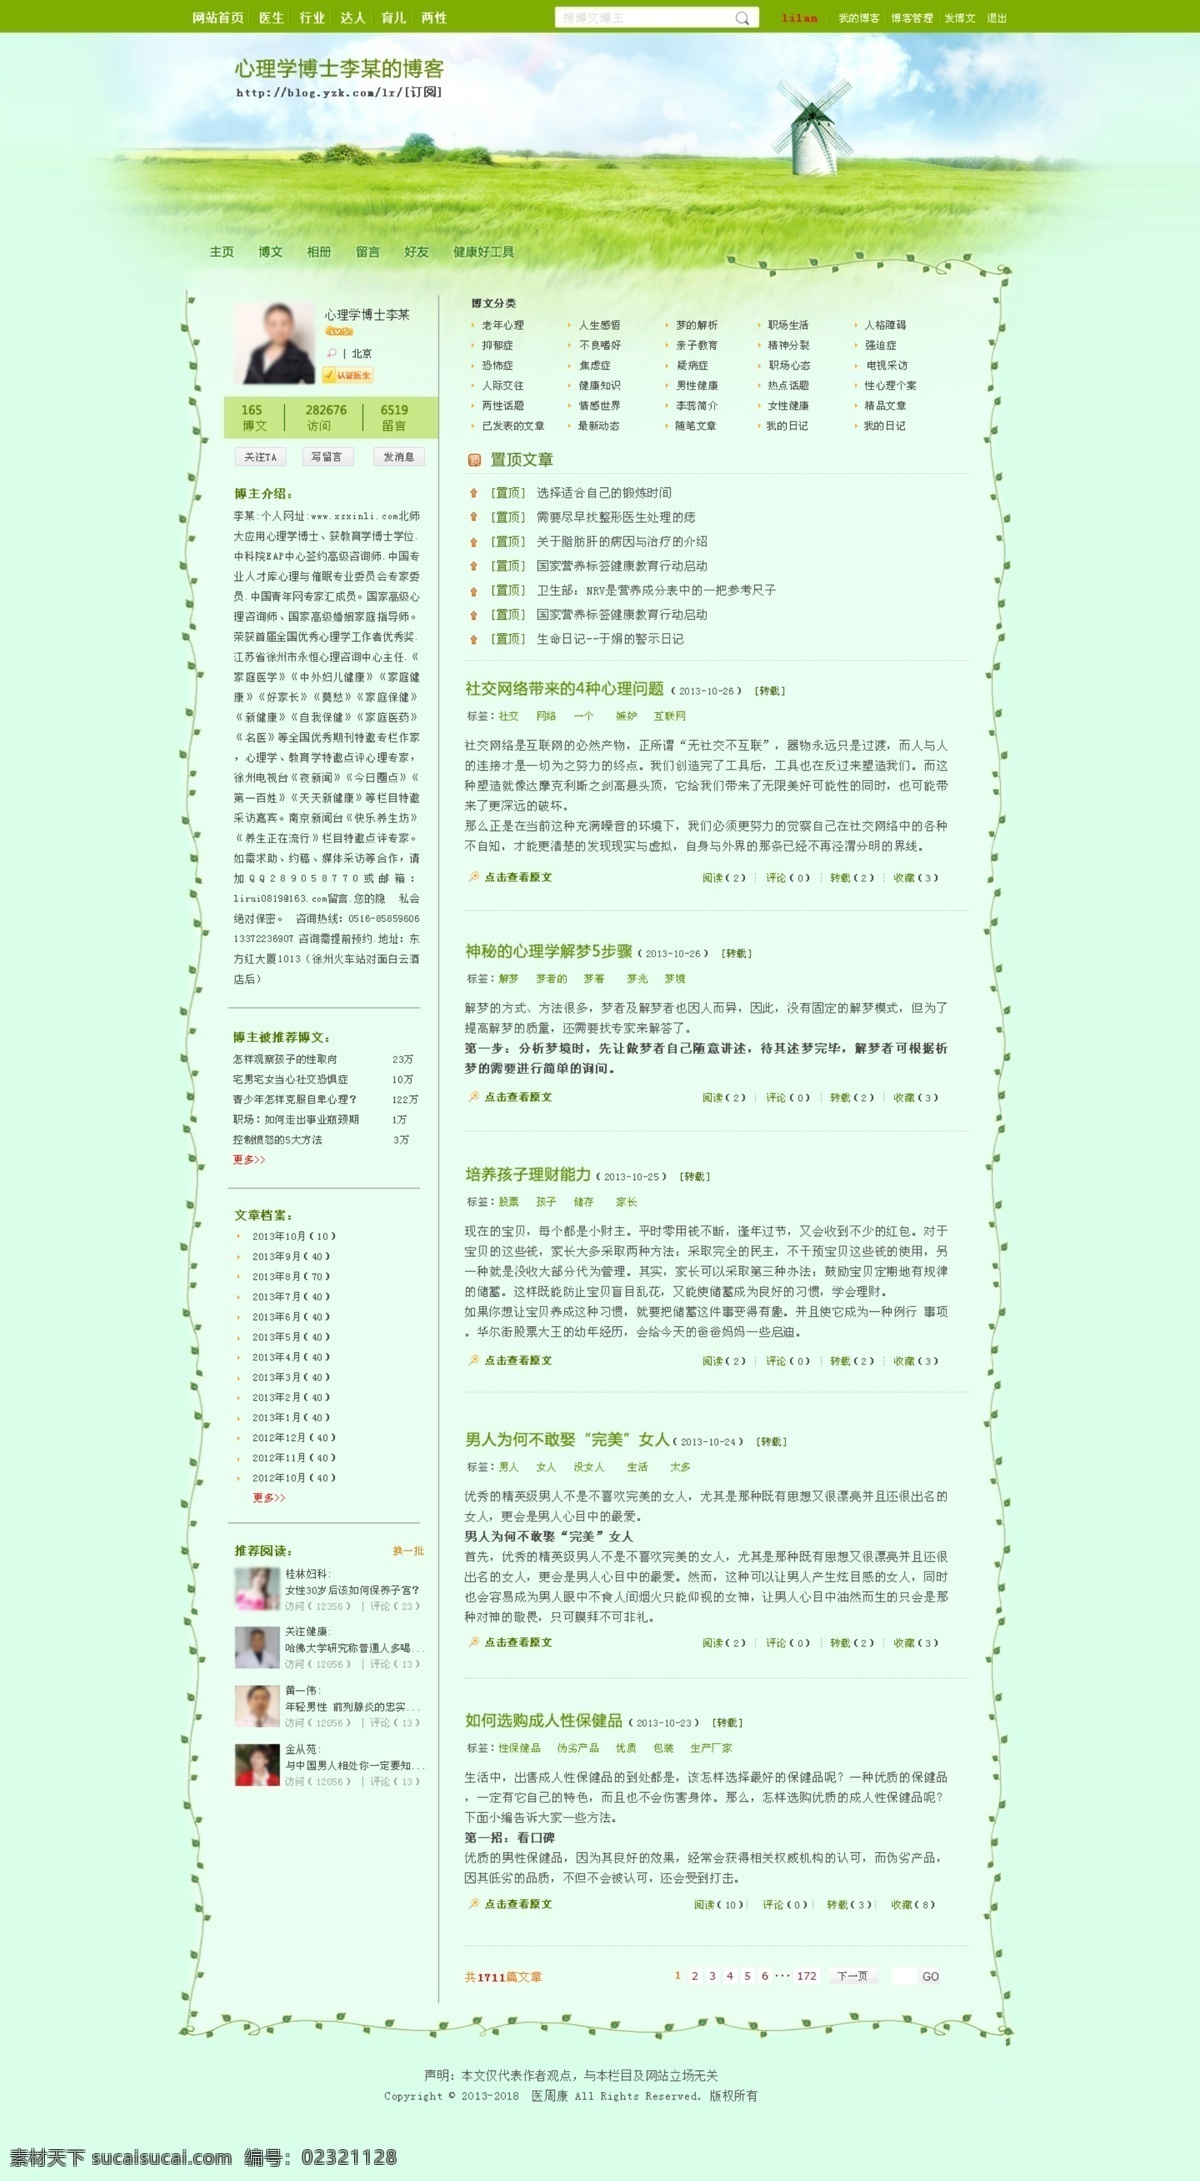 博客个人主页 个人主页 博客 绿色 清新 主页 小窝 首页 网站 专题 中文模板 网页模板 web 界面设计